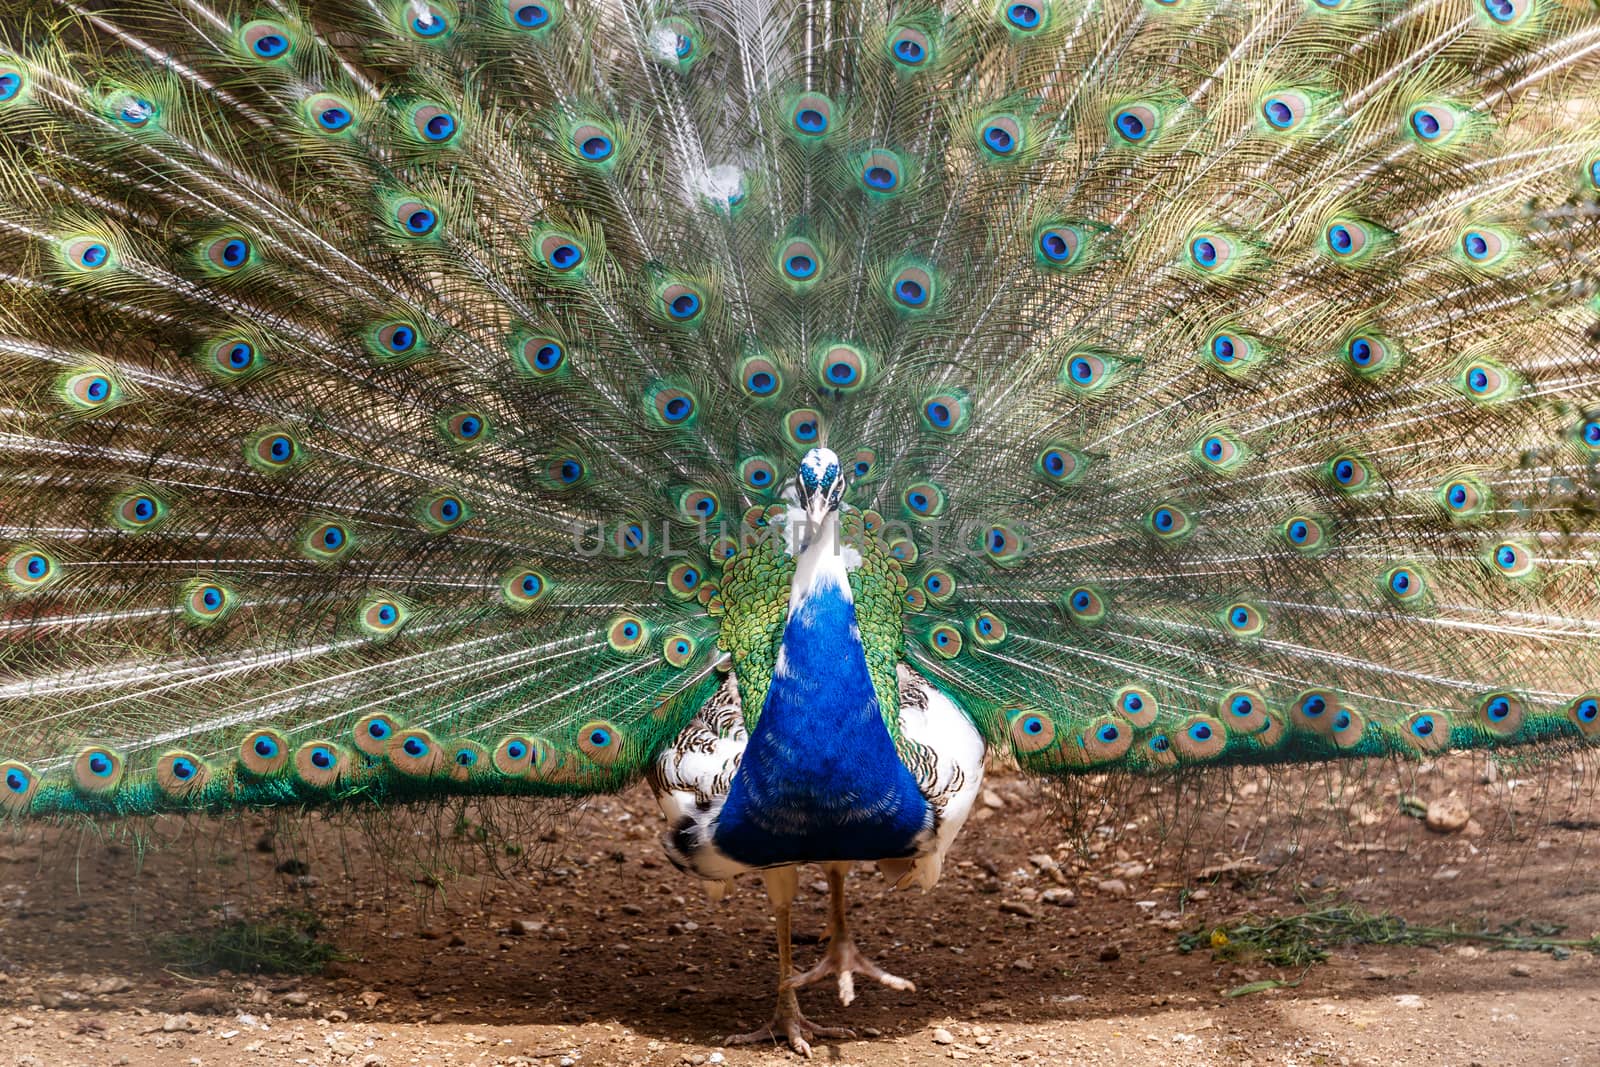 Peacock in Cage by niglaynike